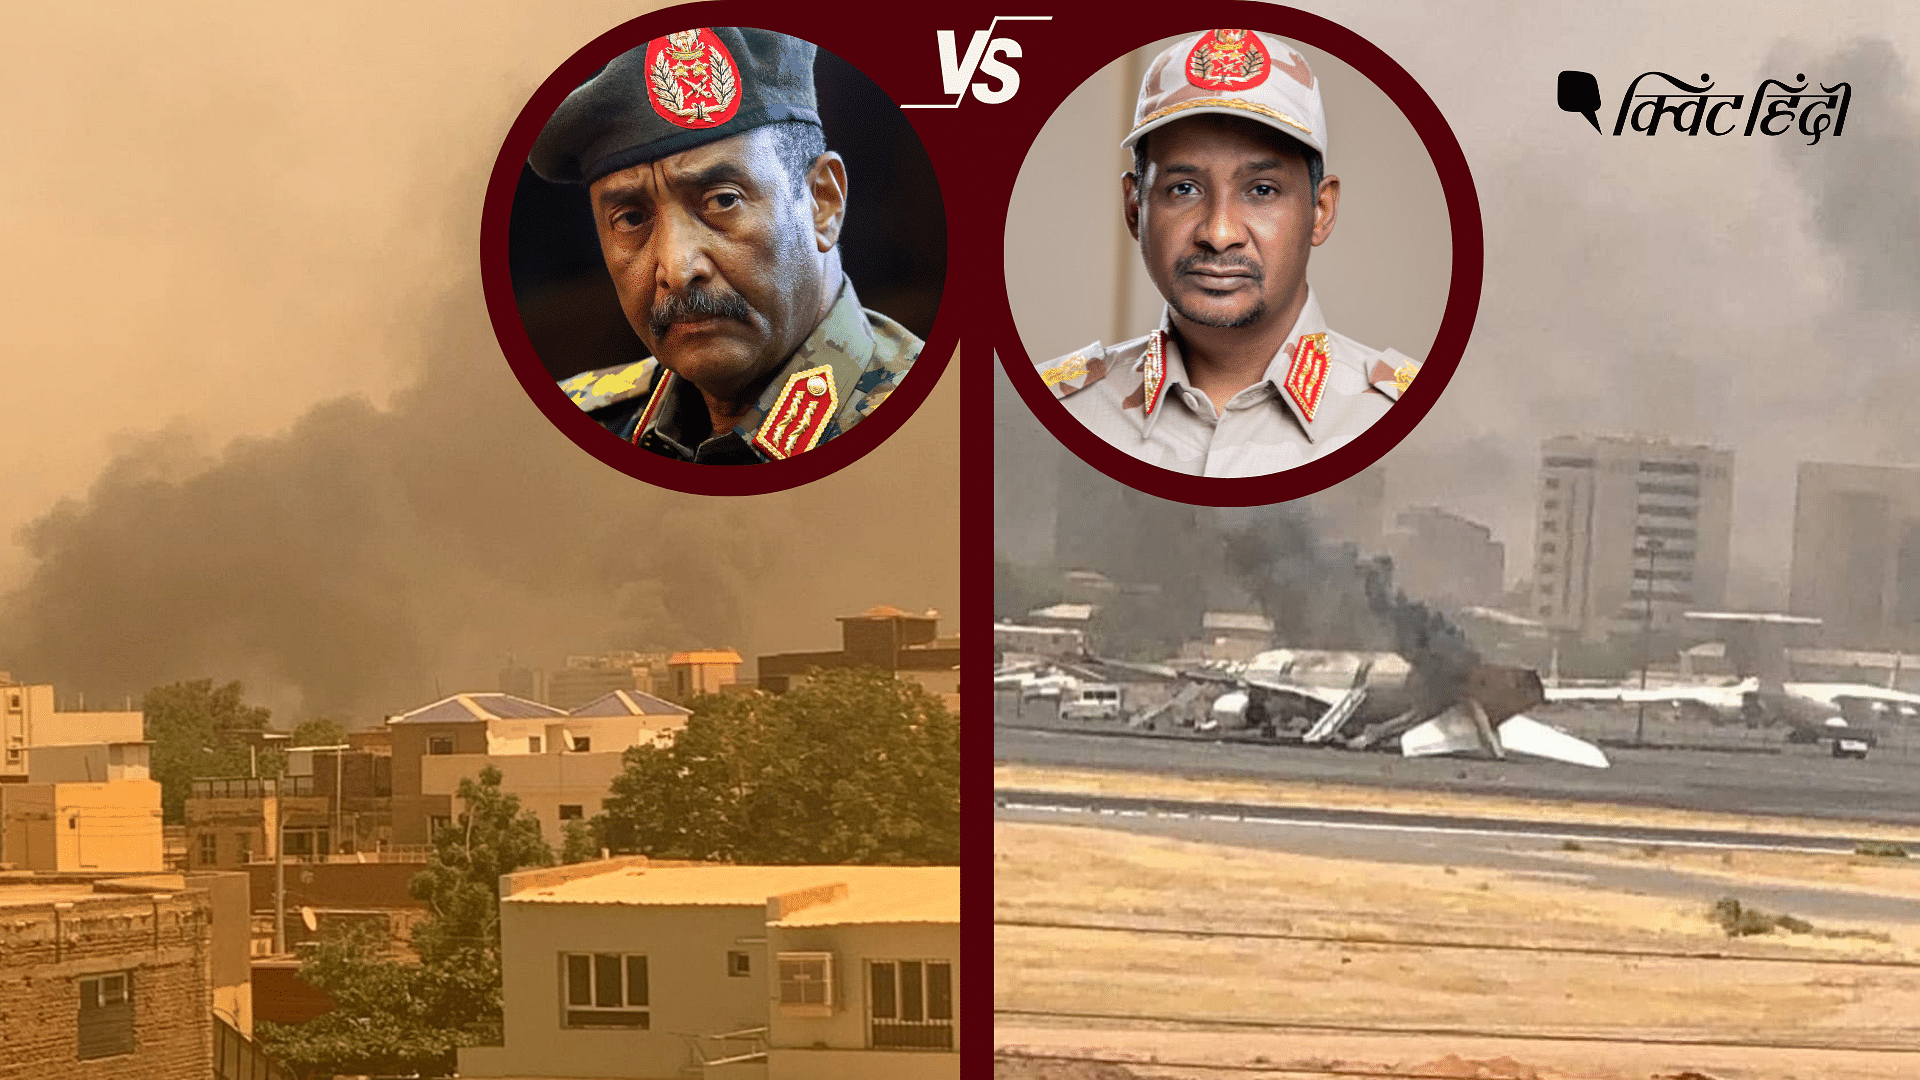 <div class="paragraphs"><p>Sudan: मिलकर तख्तापलट करने वाली सेना और रैपिड फोर्स में जंग की वजह क्या है?</p></div>